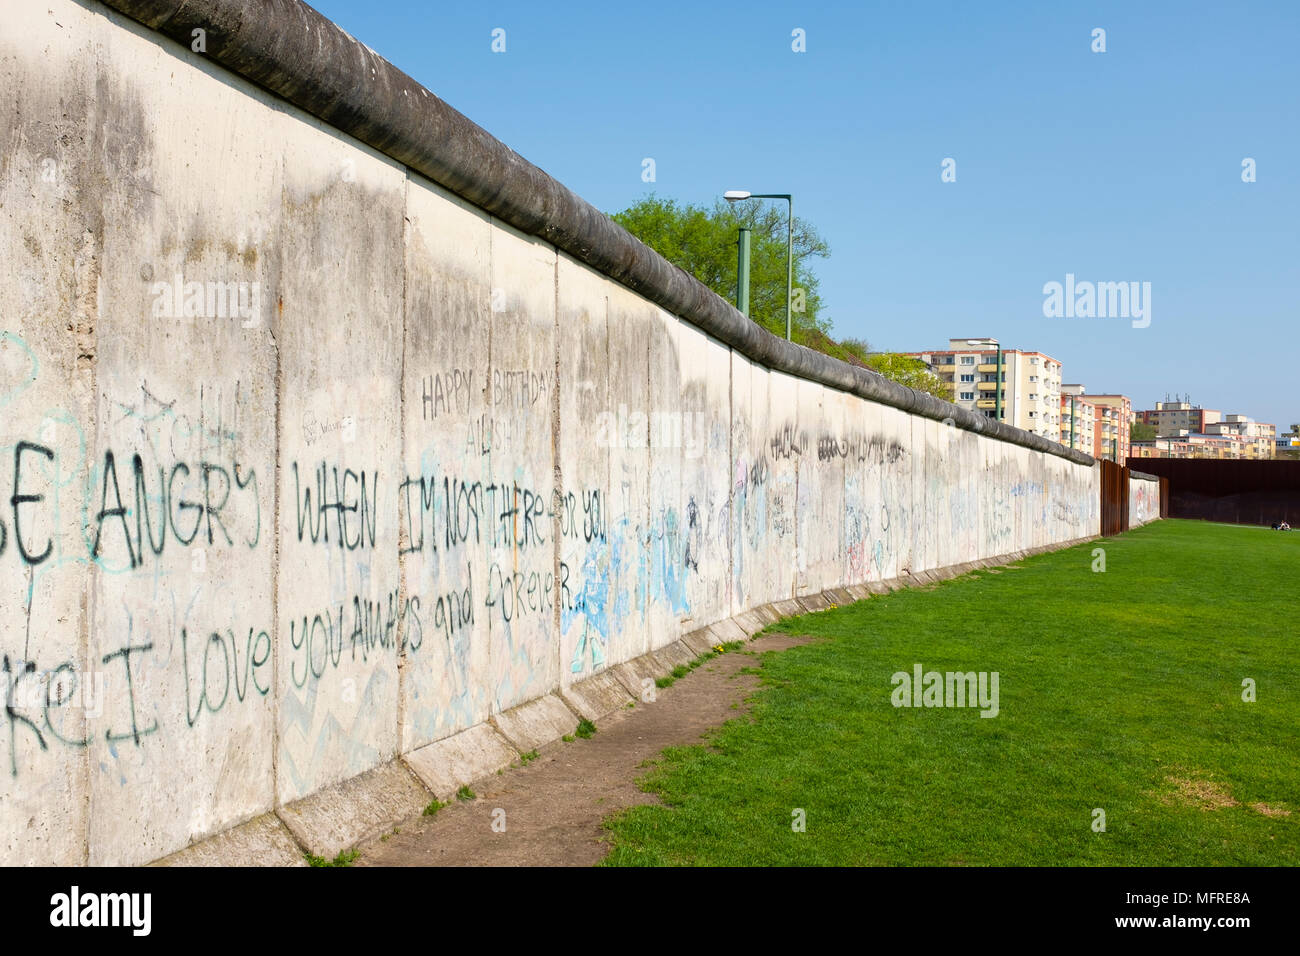 Original Abschnitt der Wand an der Gedenkstätte Berliner Mauer in der Bernauer Straße, Berlin, Deutschland. Die GedenkstŠtte Berliner Mauer erinnert an die Teilung der B Stockfoto